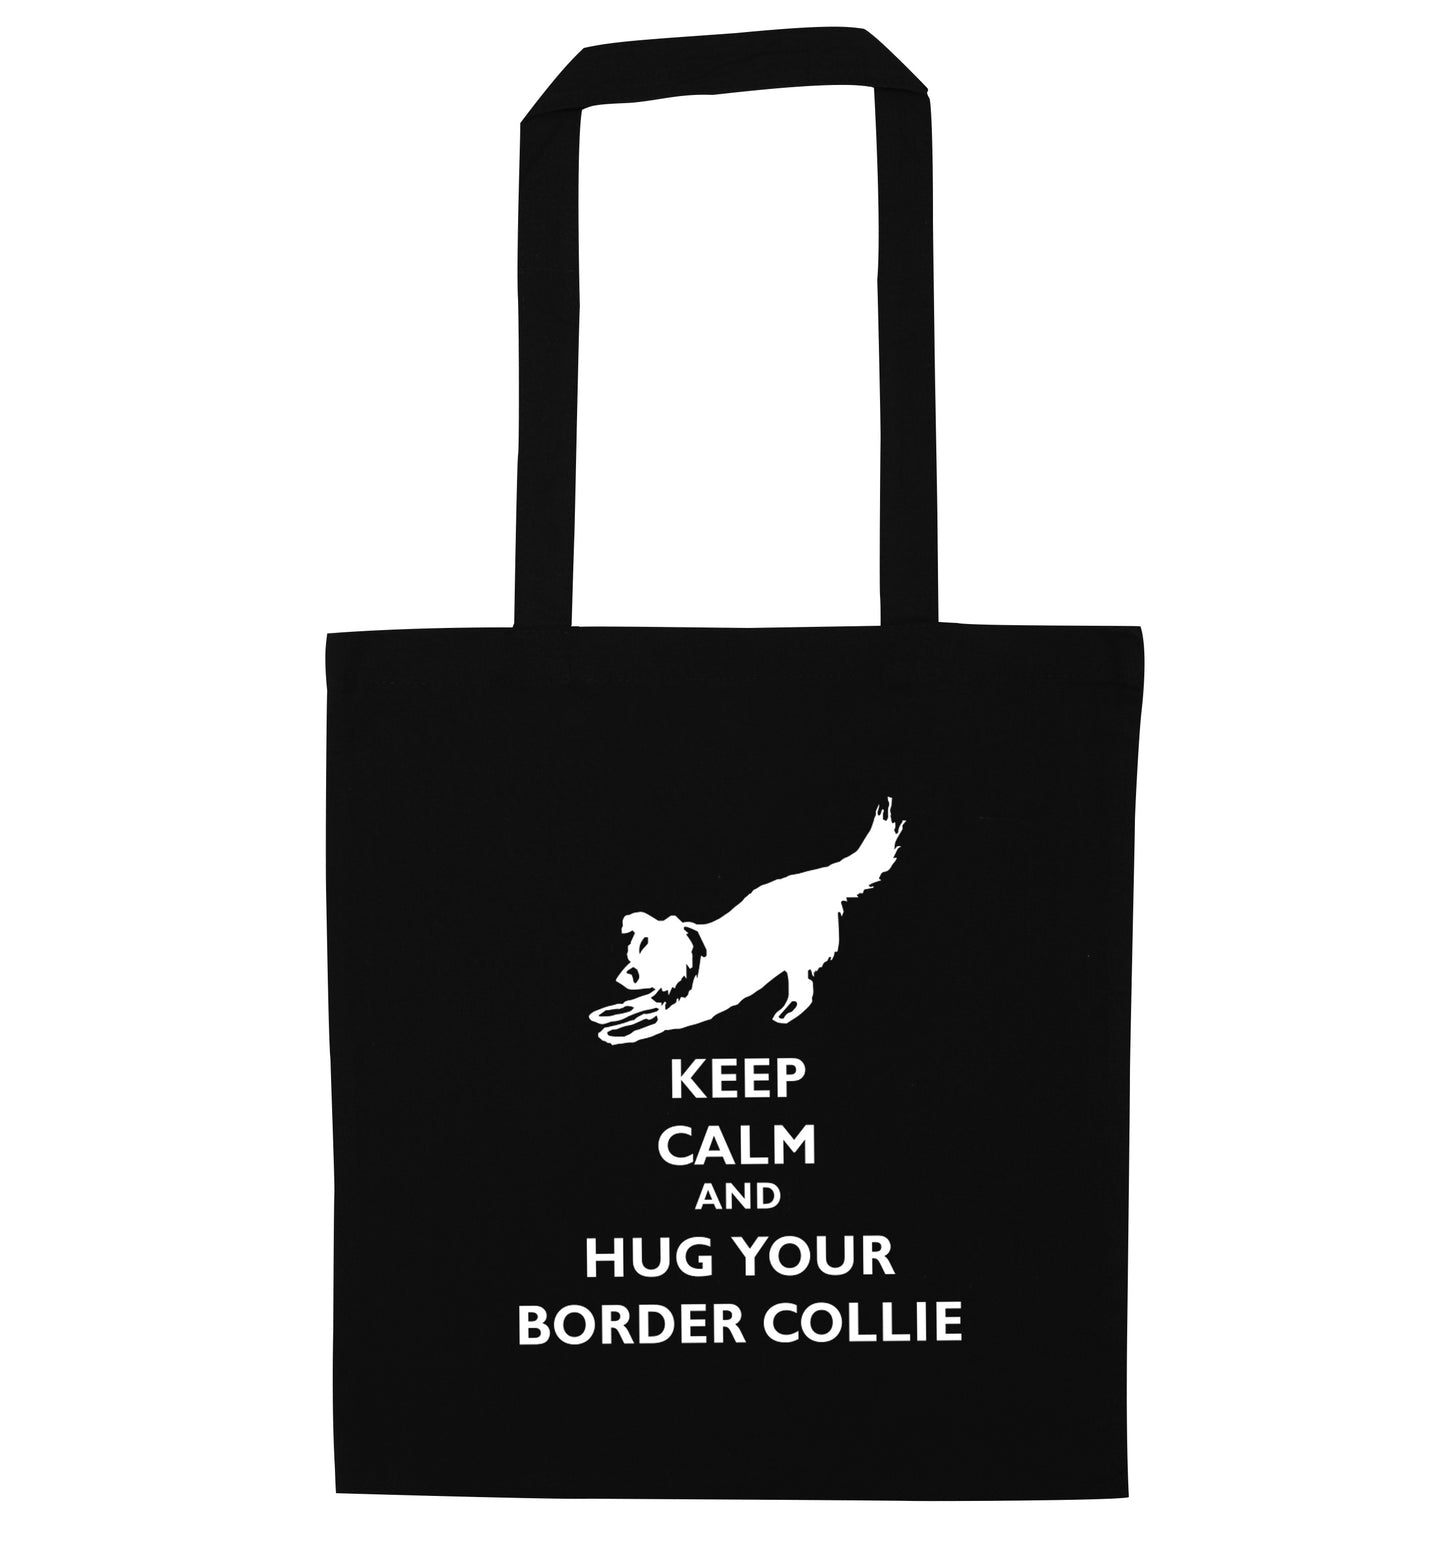 Keep calm and hug your border collie black tote bag